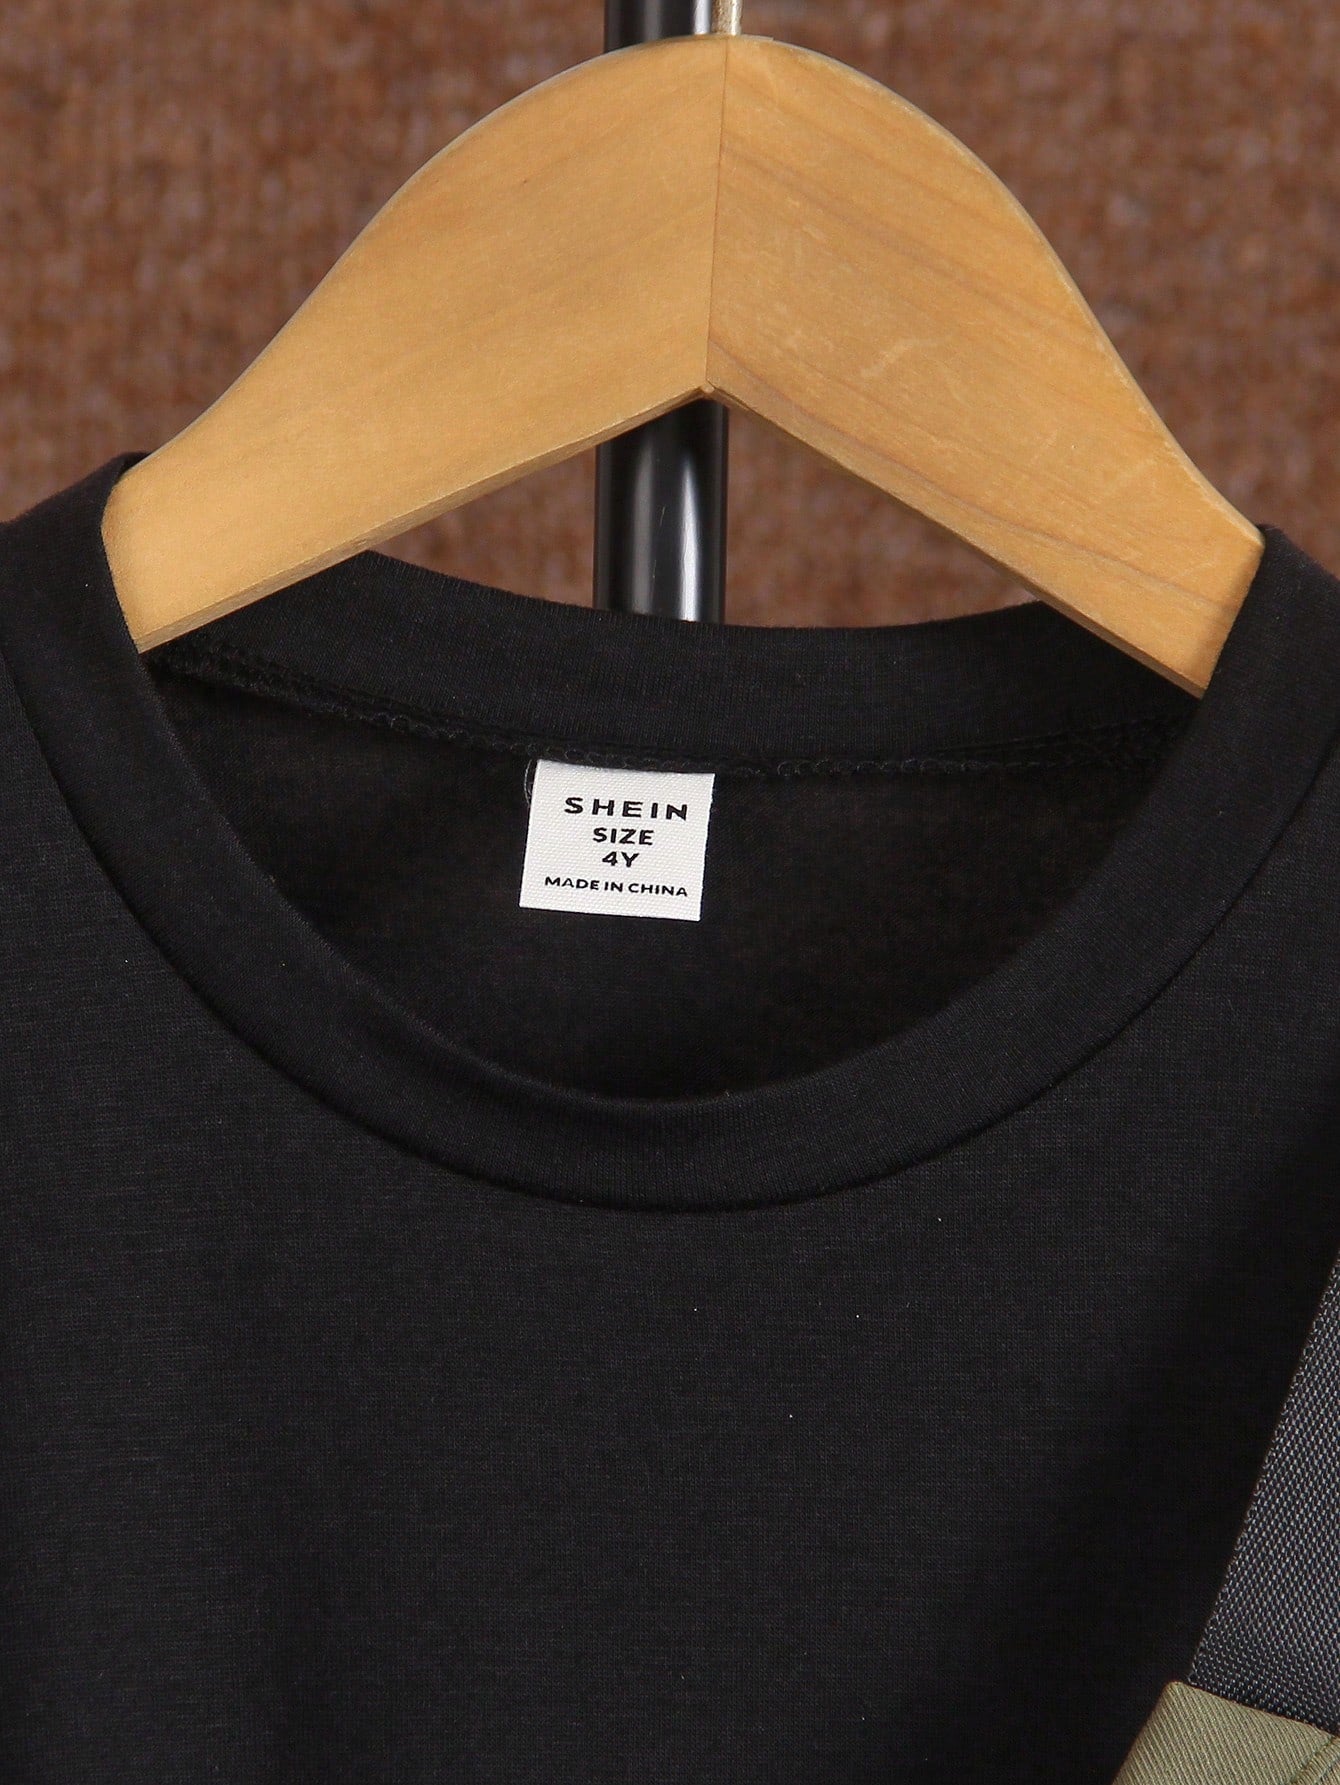 طقم لقميص صبي شبشبي سوداء برقبة دائرية و خمسة شورتات تعملية بحقيبة، مناسبة للصيف